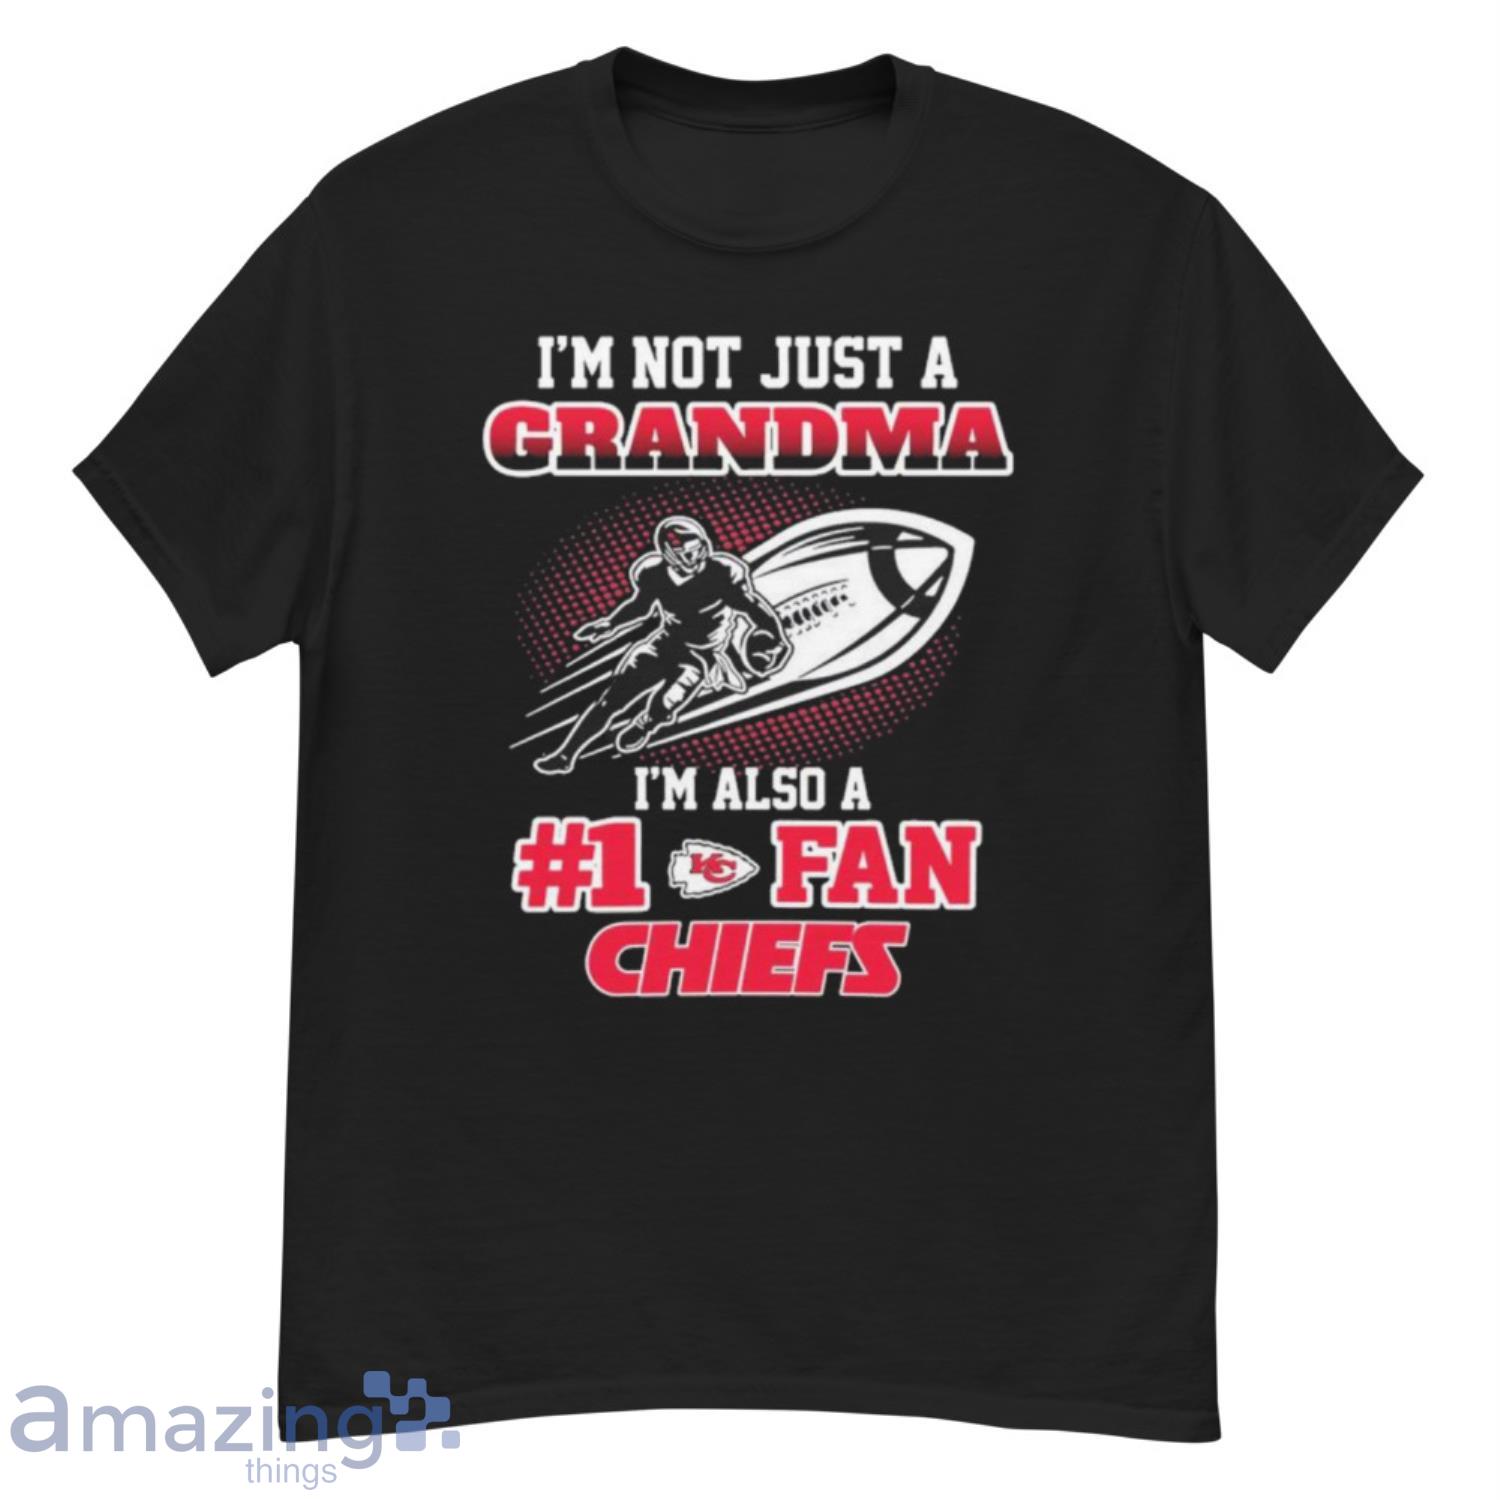 I’m not just a grandma I’m also a #1 fan Kansas City Chiefs shirt - G500 Men’s Classic T-Shirt